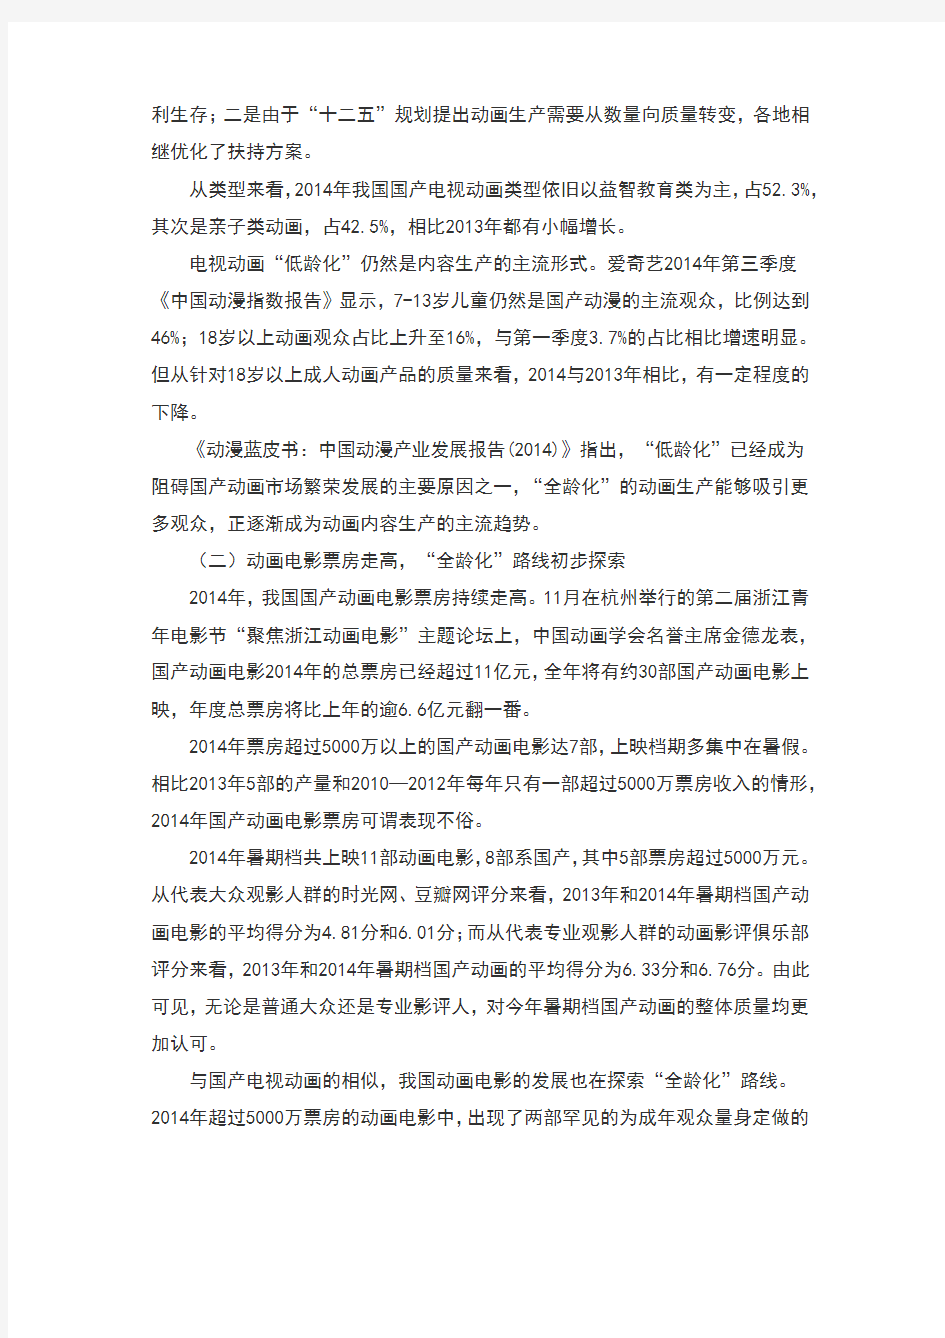 2014年度中国动漫产业发展报告